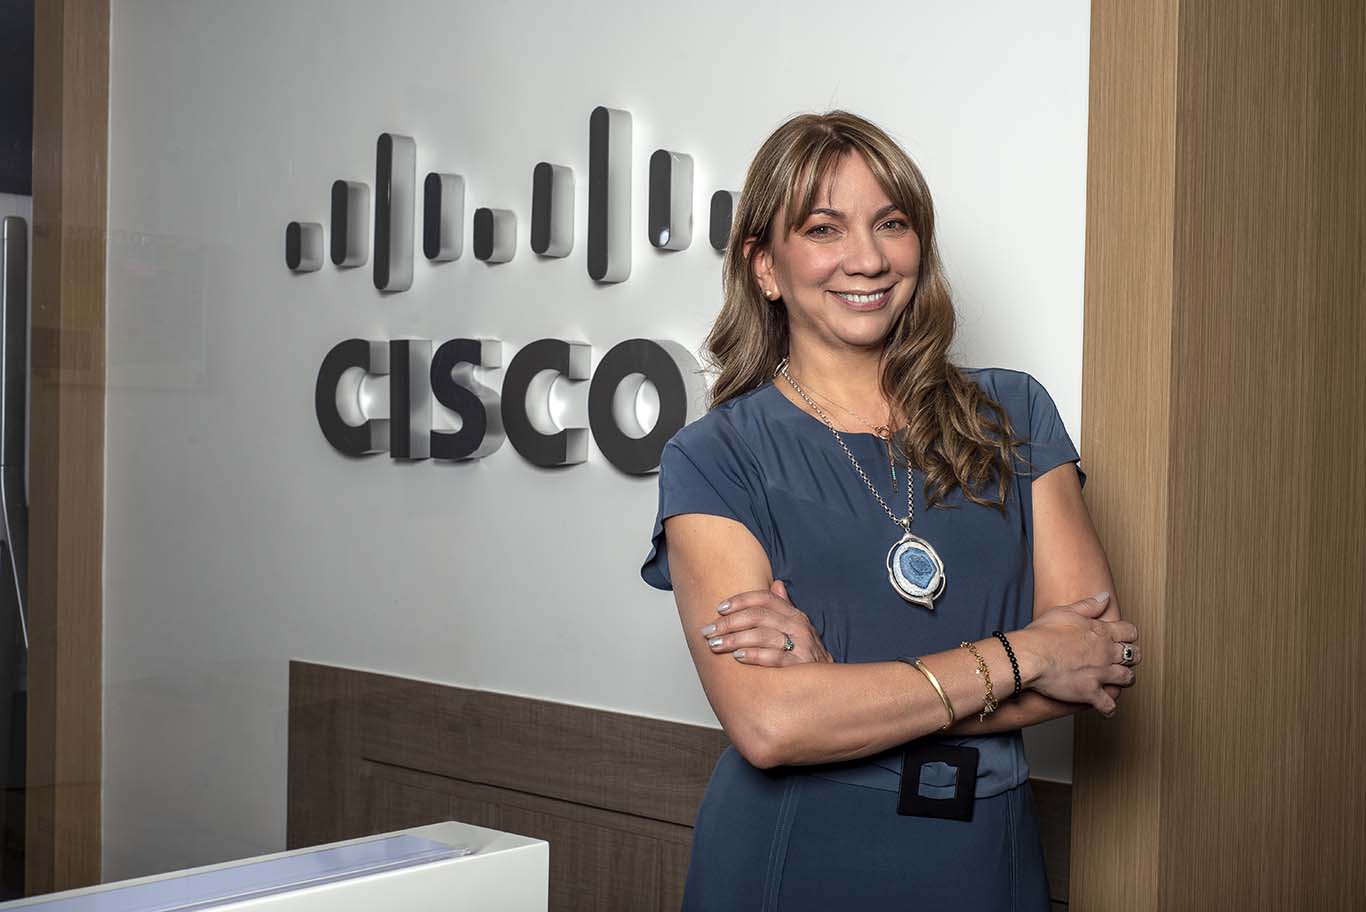 Cisco anuncia nueva Country Manager para Colombia